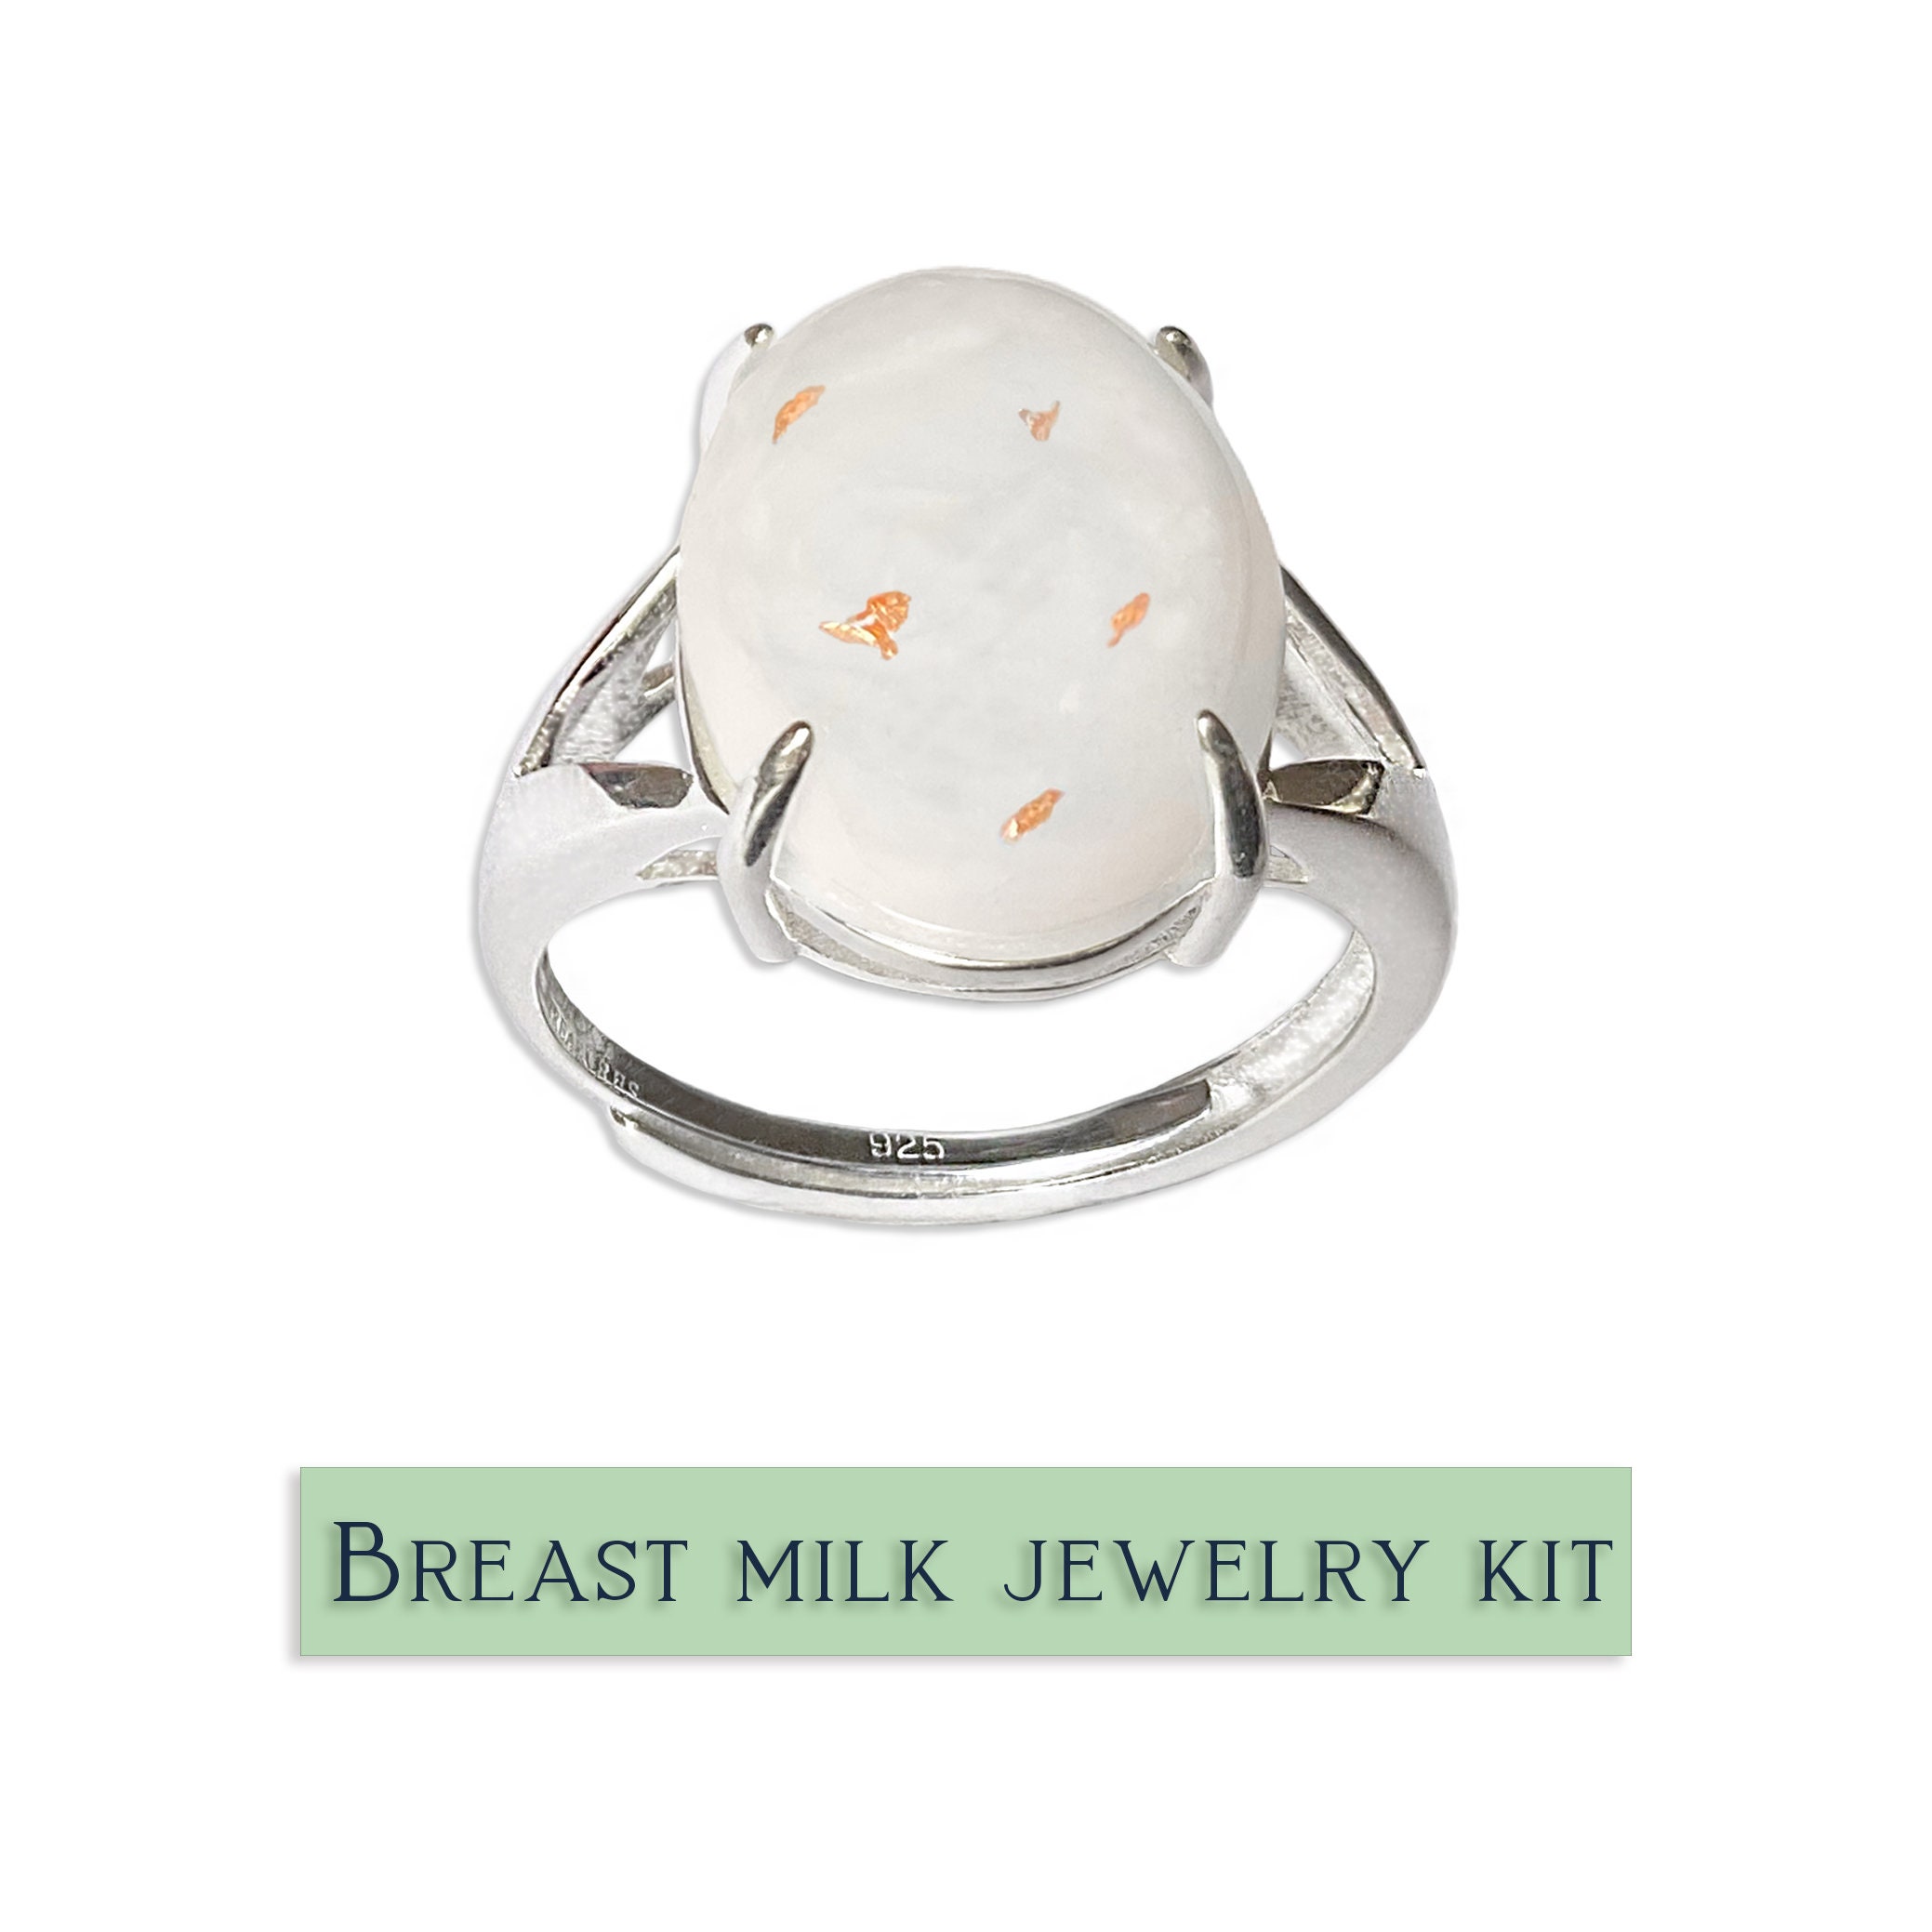 BreastMilk Jewellery DIY Kit  How to make breastmilk jewellery at home  #breastmilk #shorts 